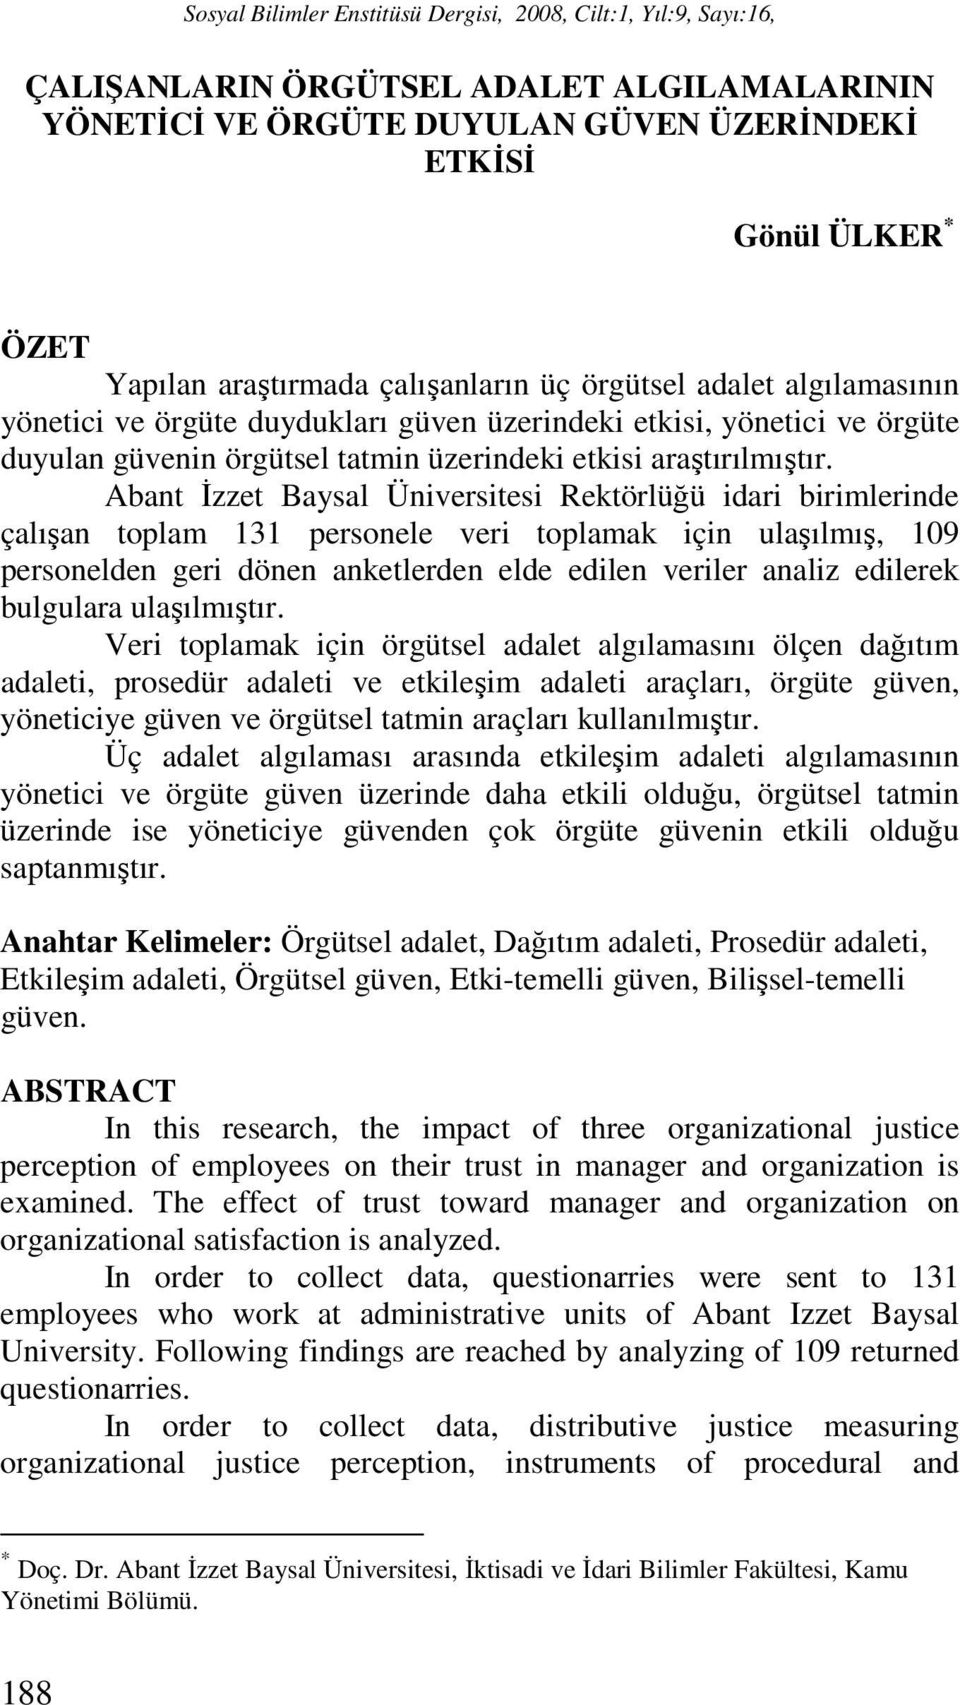 Abant İzzet Baysal Üniversitesi Rektörlüğü idari birimlerinde çalışan toplam 131 personele veri toplamak için ulaşılmış, 109 personelden geri dönen anketlerden elde edilen veriler analiz edilerek